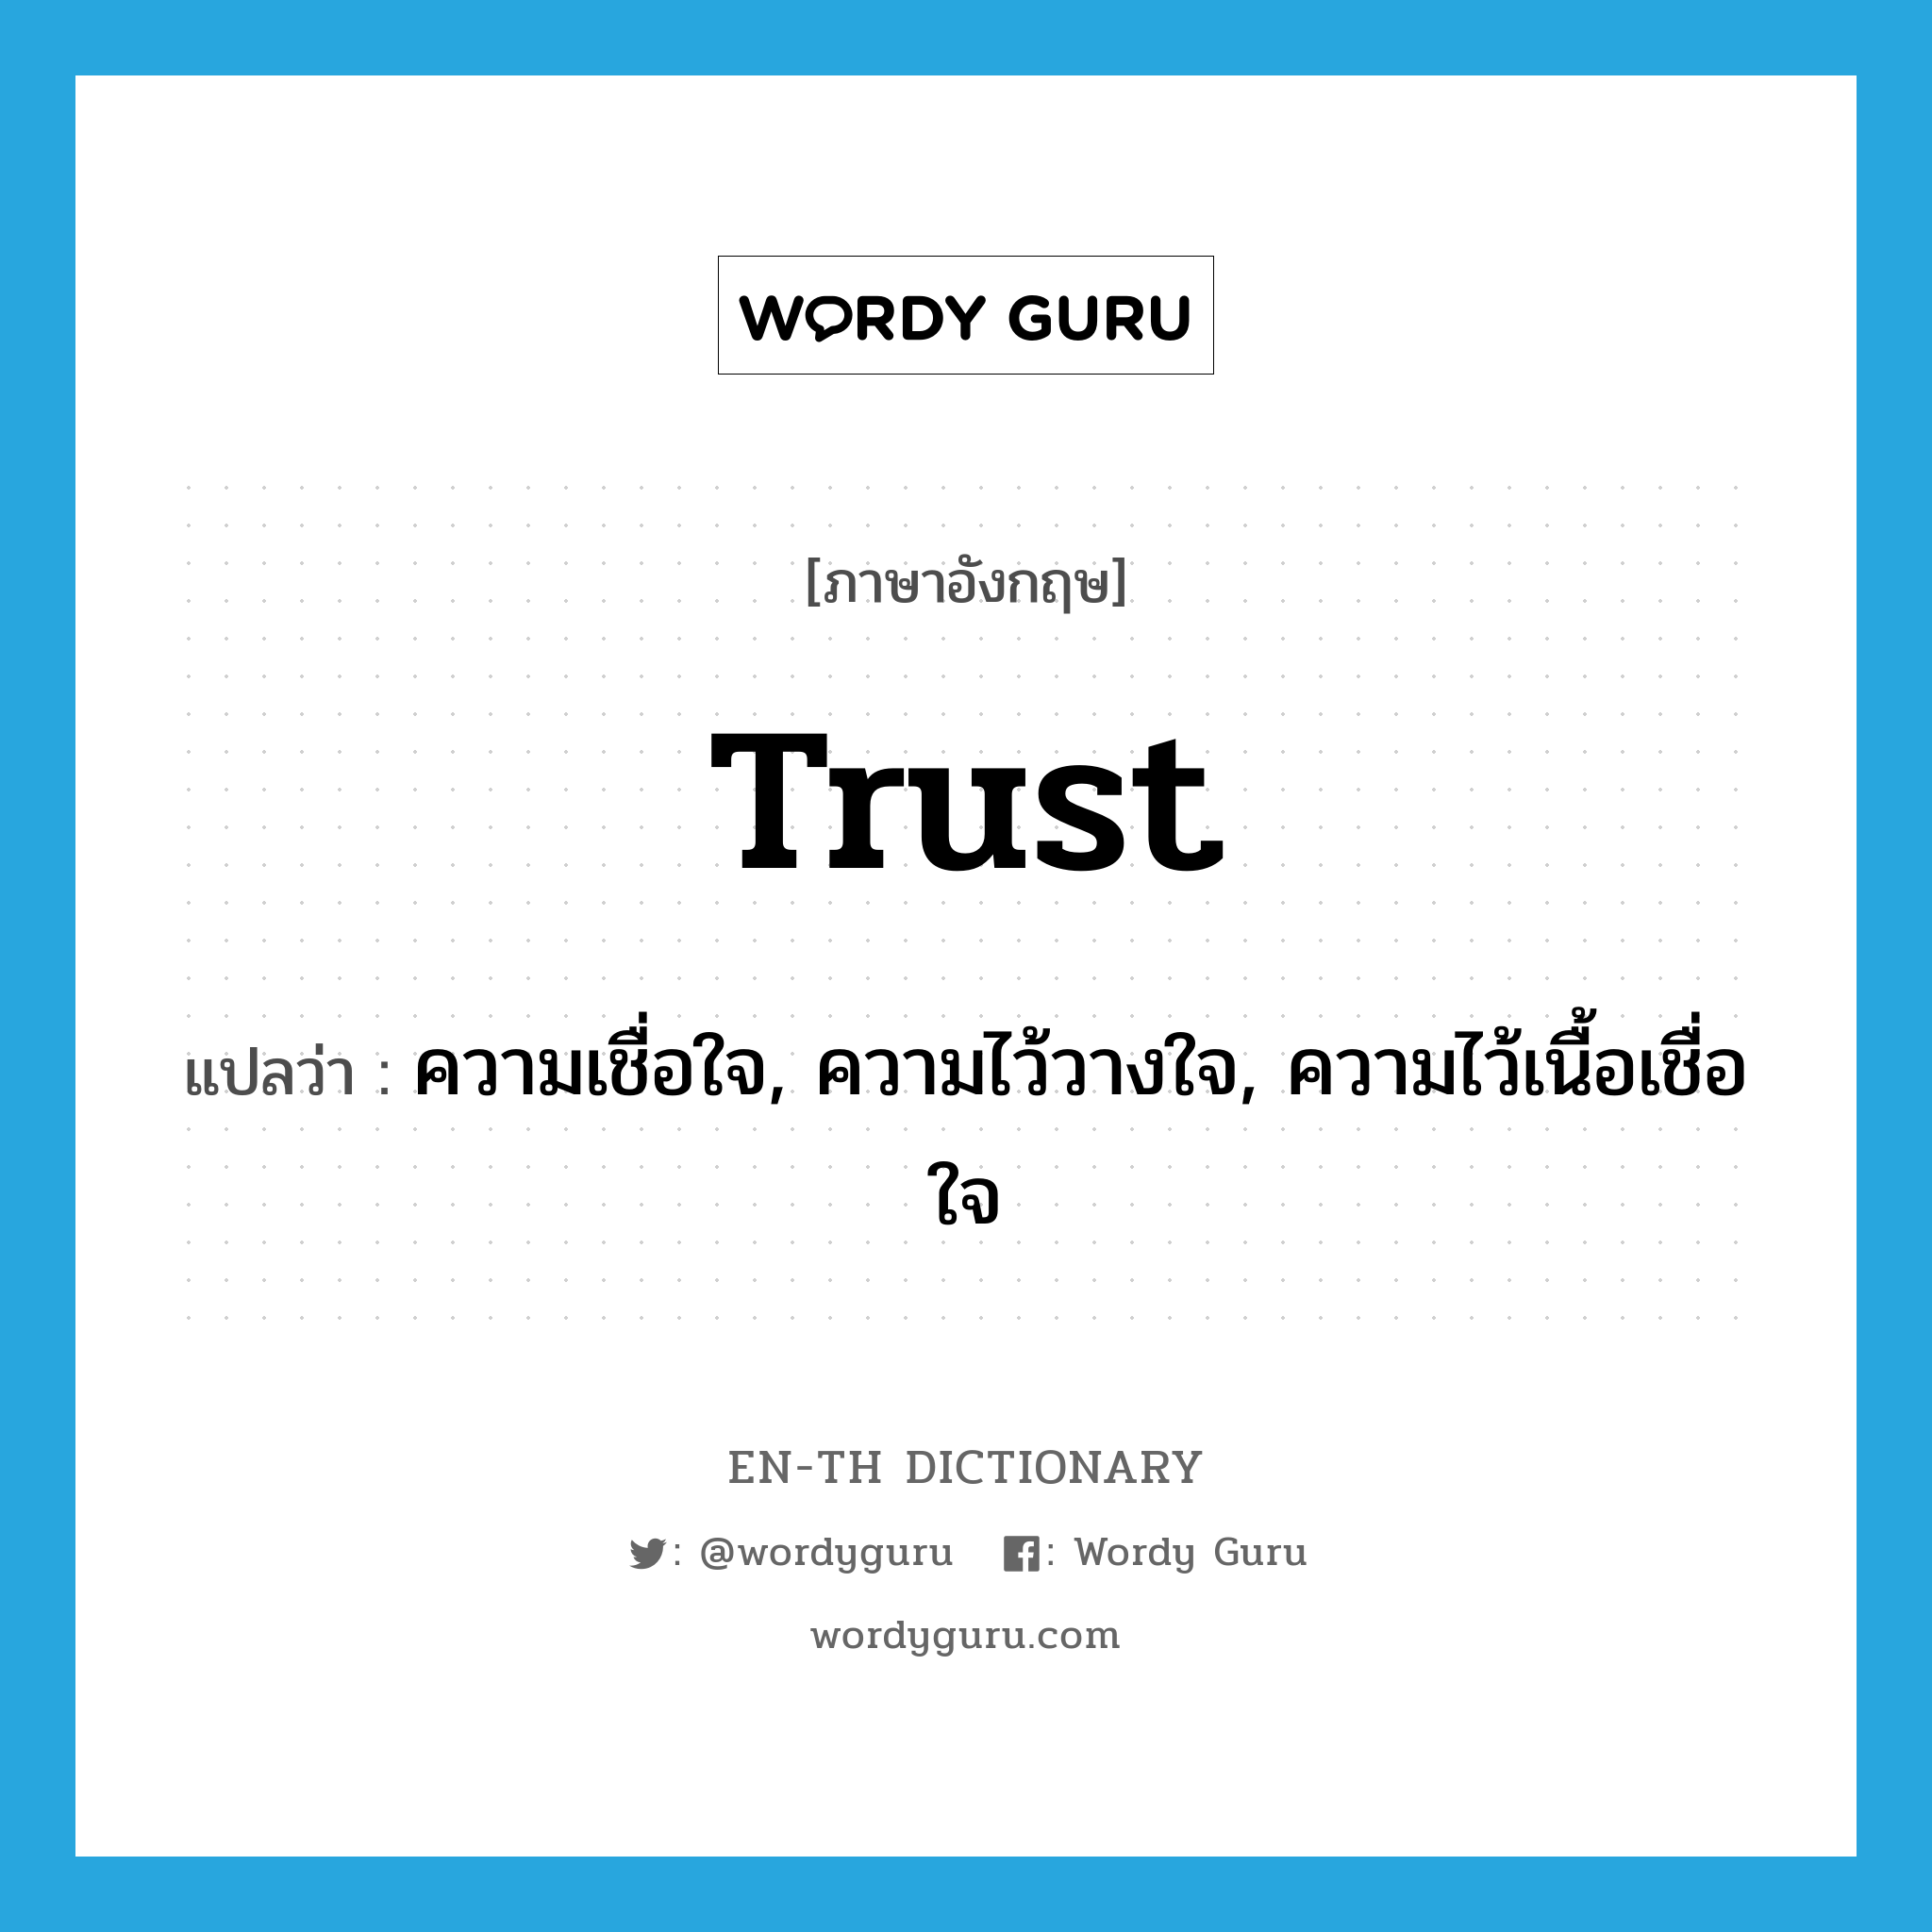 ความเชื่อใจ, ความไว้วางใจ, ความไว้เนื้อเชื่อใจ ภาษาอังกฤษ?, คำศัพท์ภาษาอังกฤษ ความเชื่อใจ, ความไว้วางใจ, ความไว้เนื้อเชื่อใจ แปลว่า trust ประเภท N หมวด N